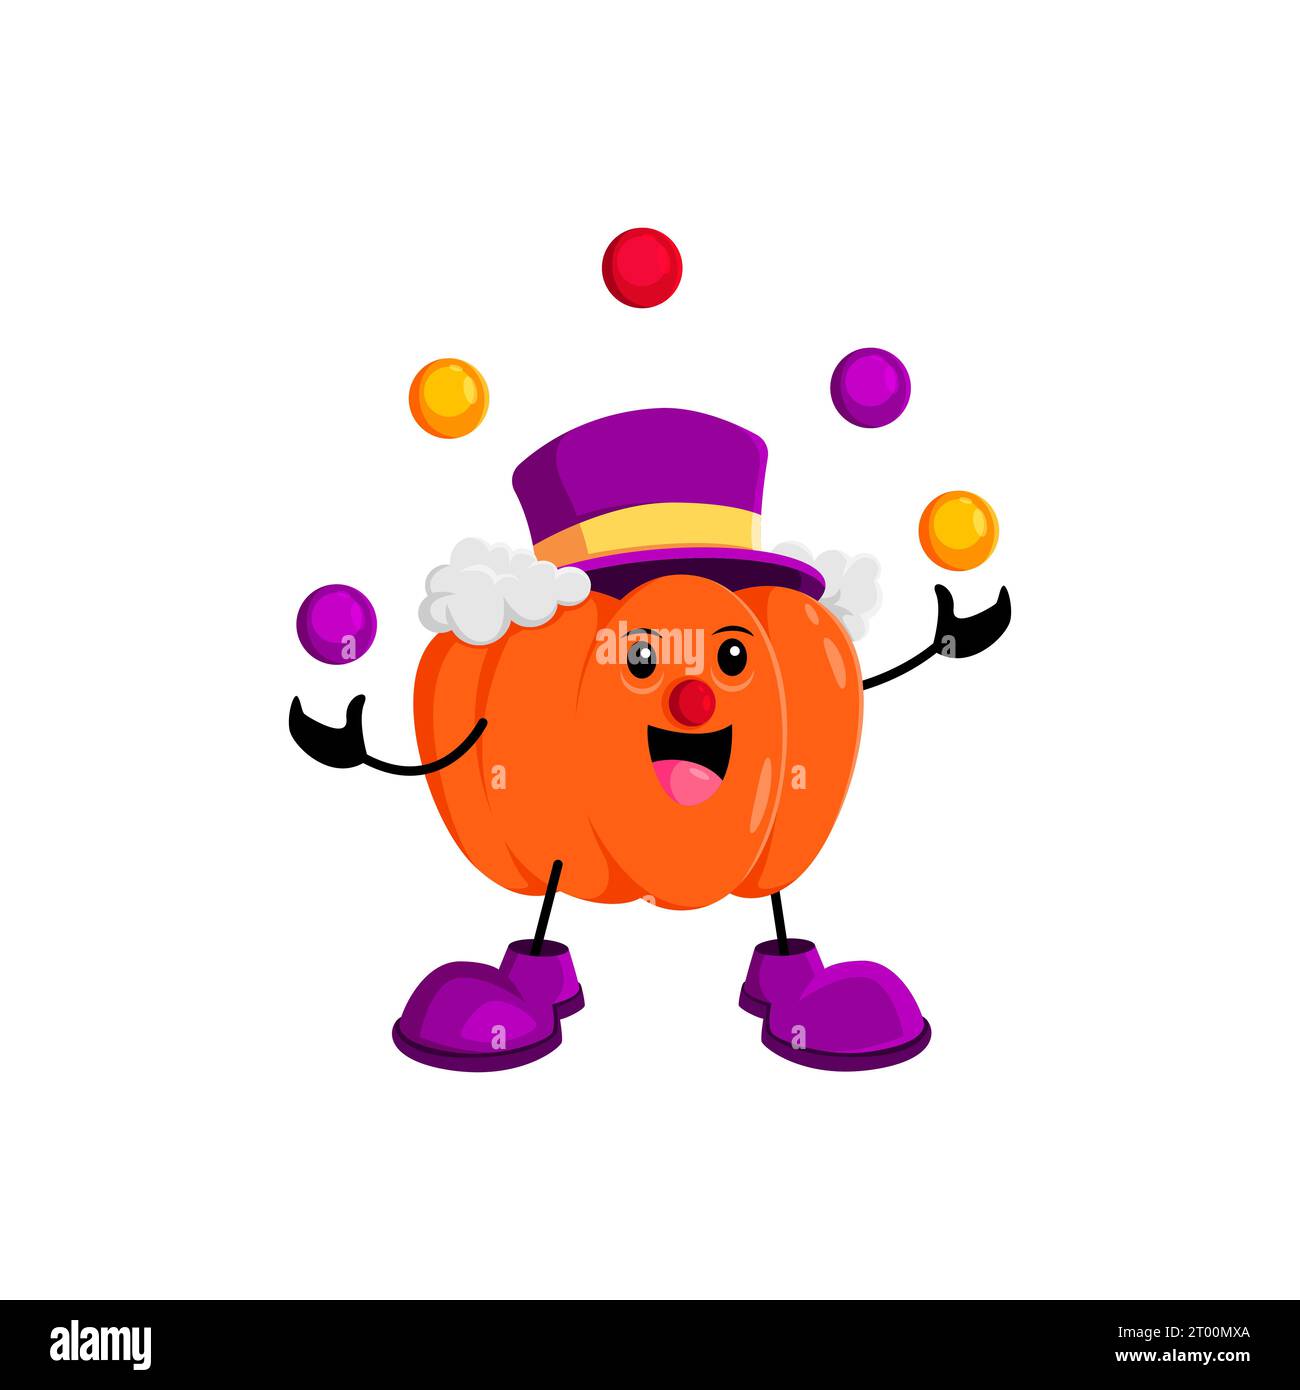 Il personaggio della zucca di Halloween indossa un colorato costume da clown mentre si destreggia abilmente con le palle, aggiungendo un fascino giocoso alle spaventose feste. Personaggio di zucca allegro e vettoriale isolato Illustrazione Vettoriale